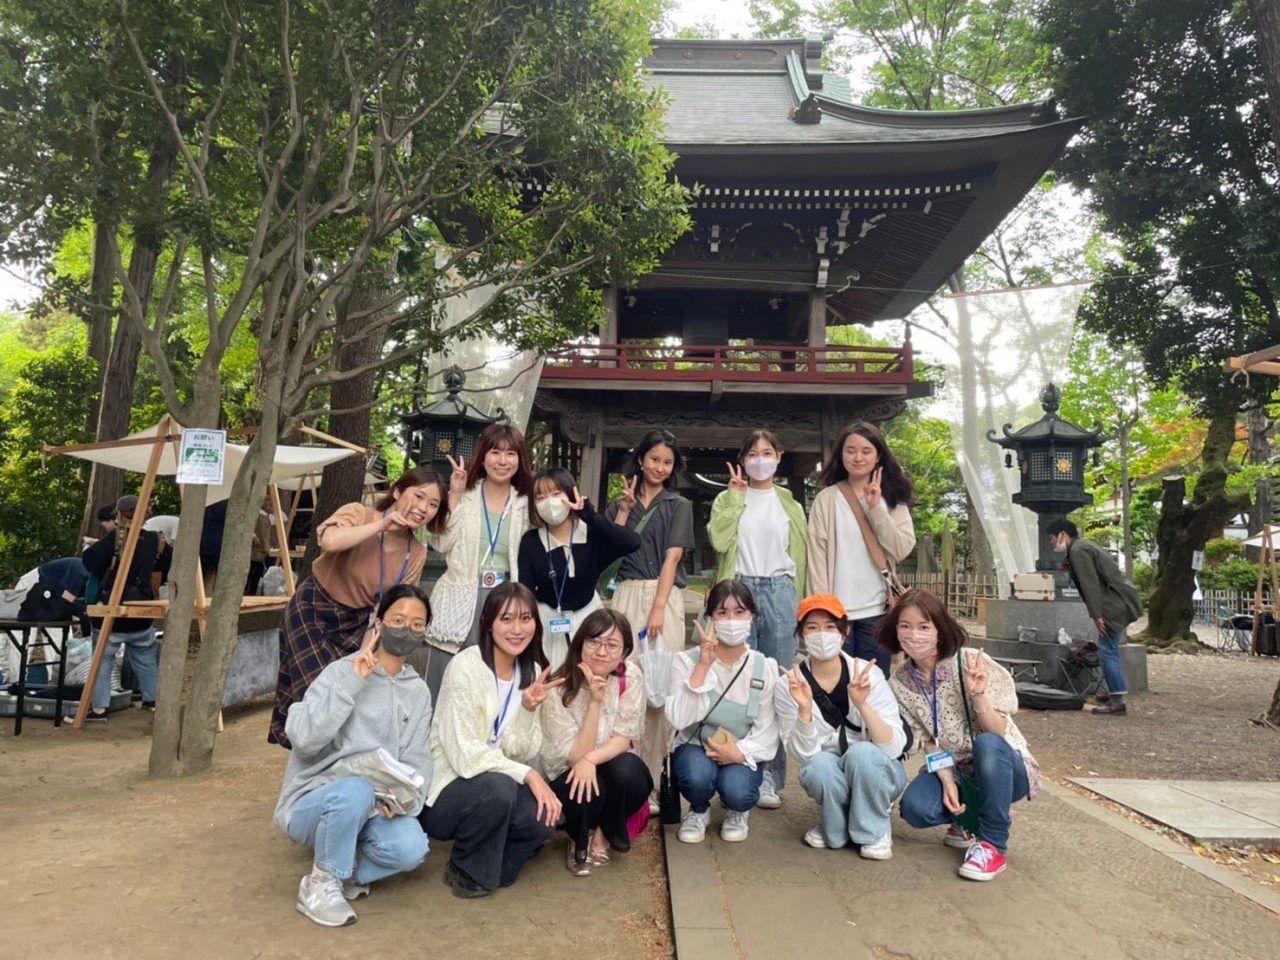 【Event Report】明治大学狛江インターナショナル・ハウス（KIH）の学生さんたちが、地域の人気イベント「珈琲参道」にボランティア参加しました！